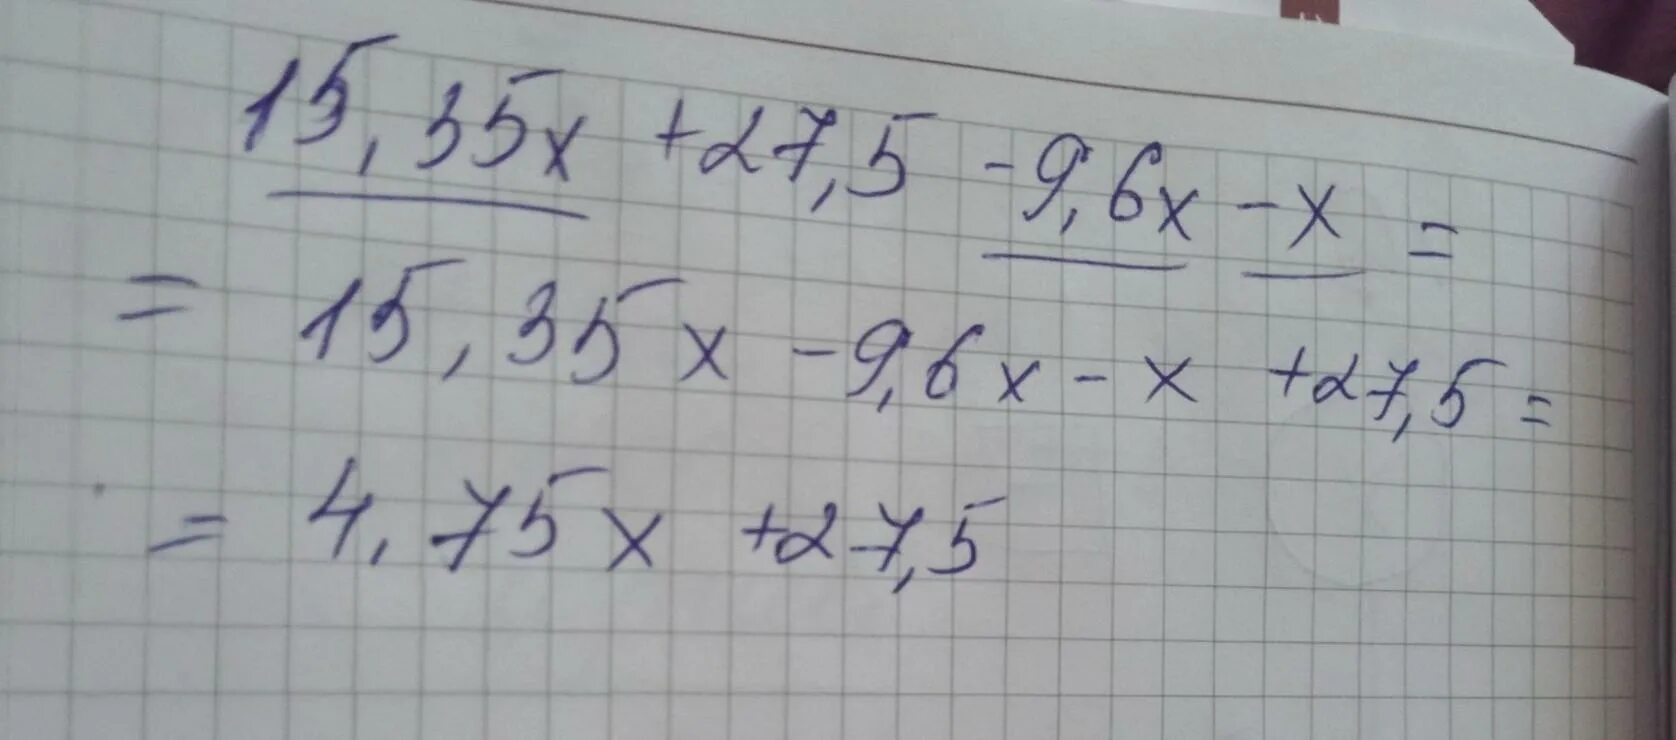 Приведи подобные слагаемые 15,88x+27,6-9,6x-x. Приведите подобные слагаемые 9-2х-6x+9. Приведи подобные слагаемые 4х-9х=. Приведи подобные слагаемые -2, 27x+7, 5x-19, 2x. 2 x x7 8